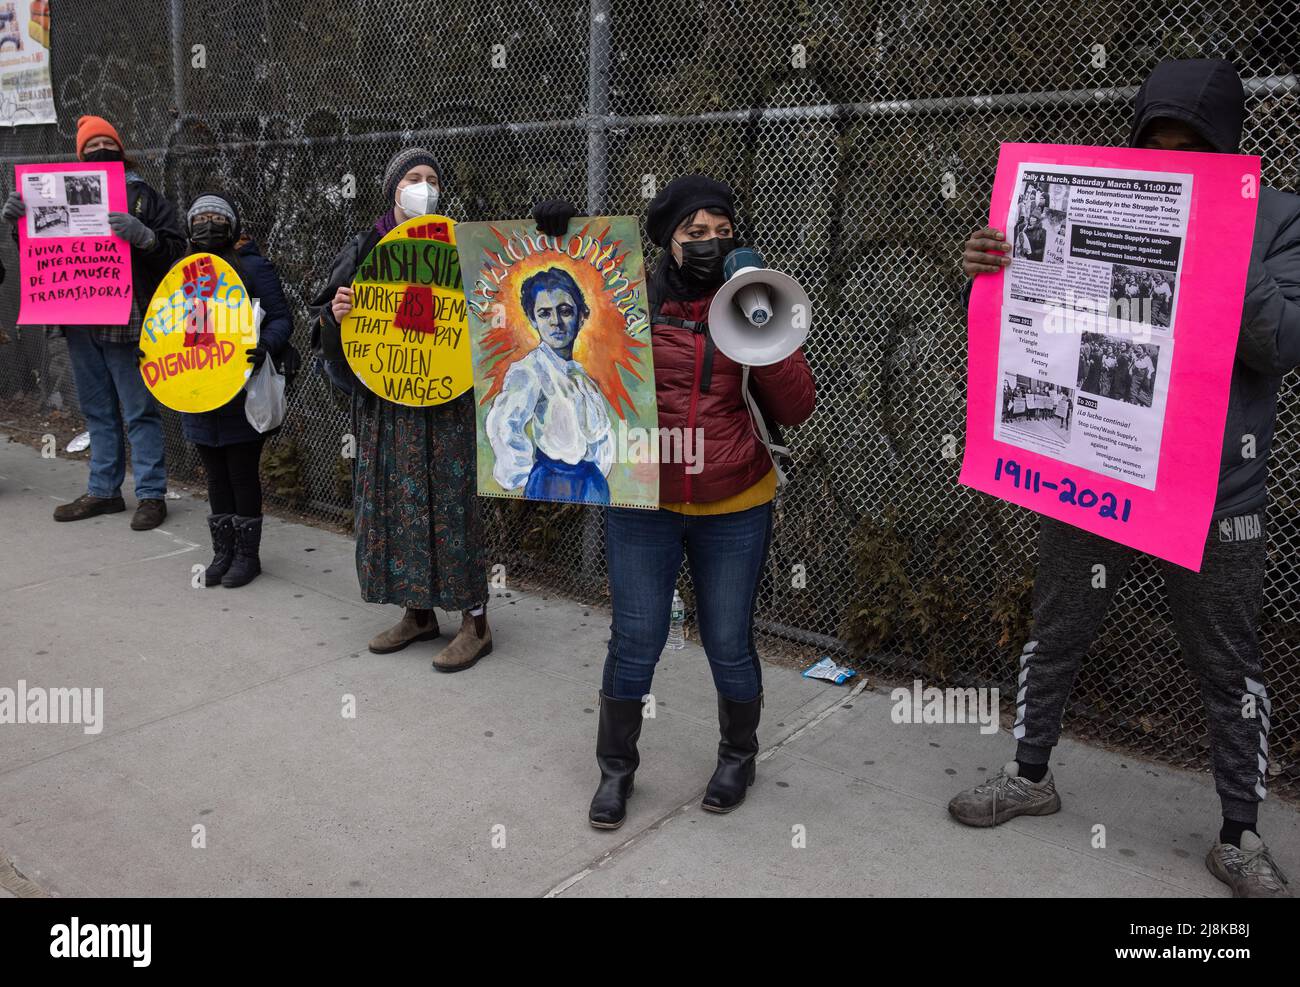 NEW YORK, New York – 6. März 2021: Demonstranten versammeln sich vor dem Internationalen Frauentag zur Unterstützung von Wäschereiarbeitern, die die unrechtmäßige Kündigung vorbringen. Stockfoto